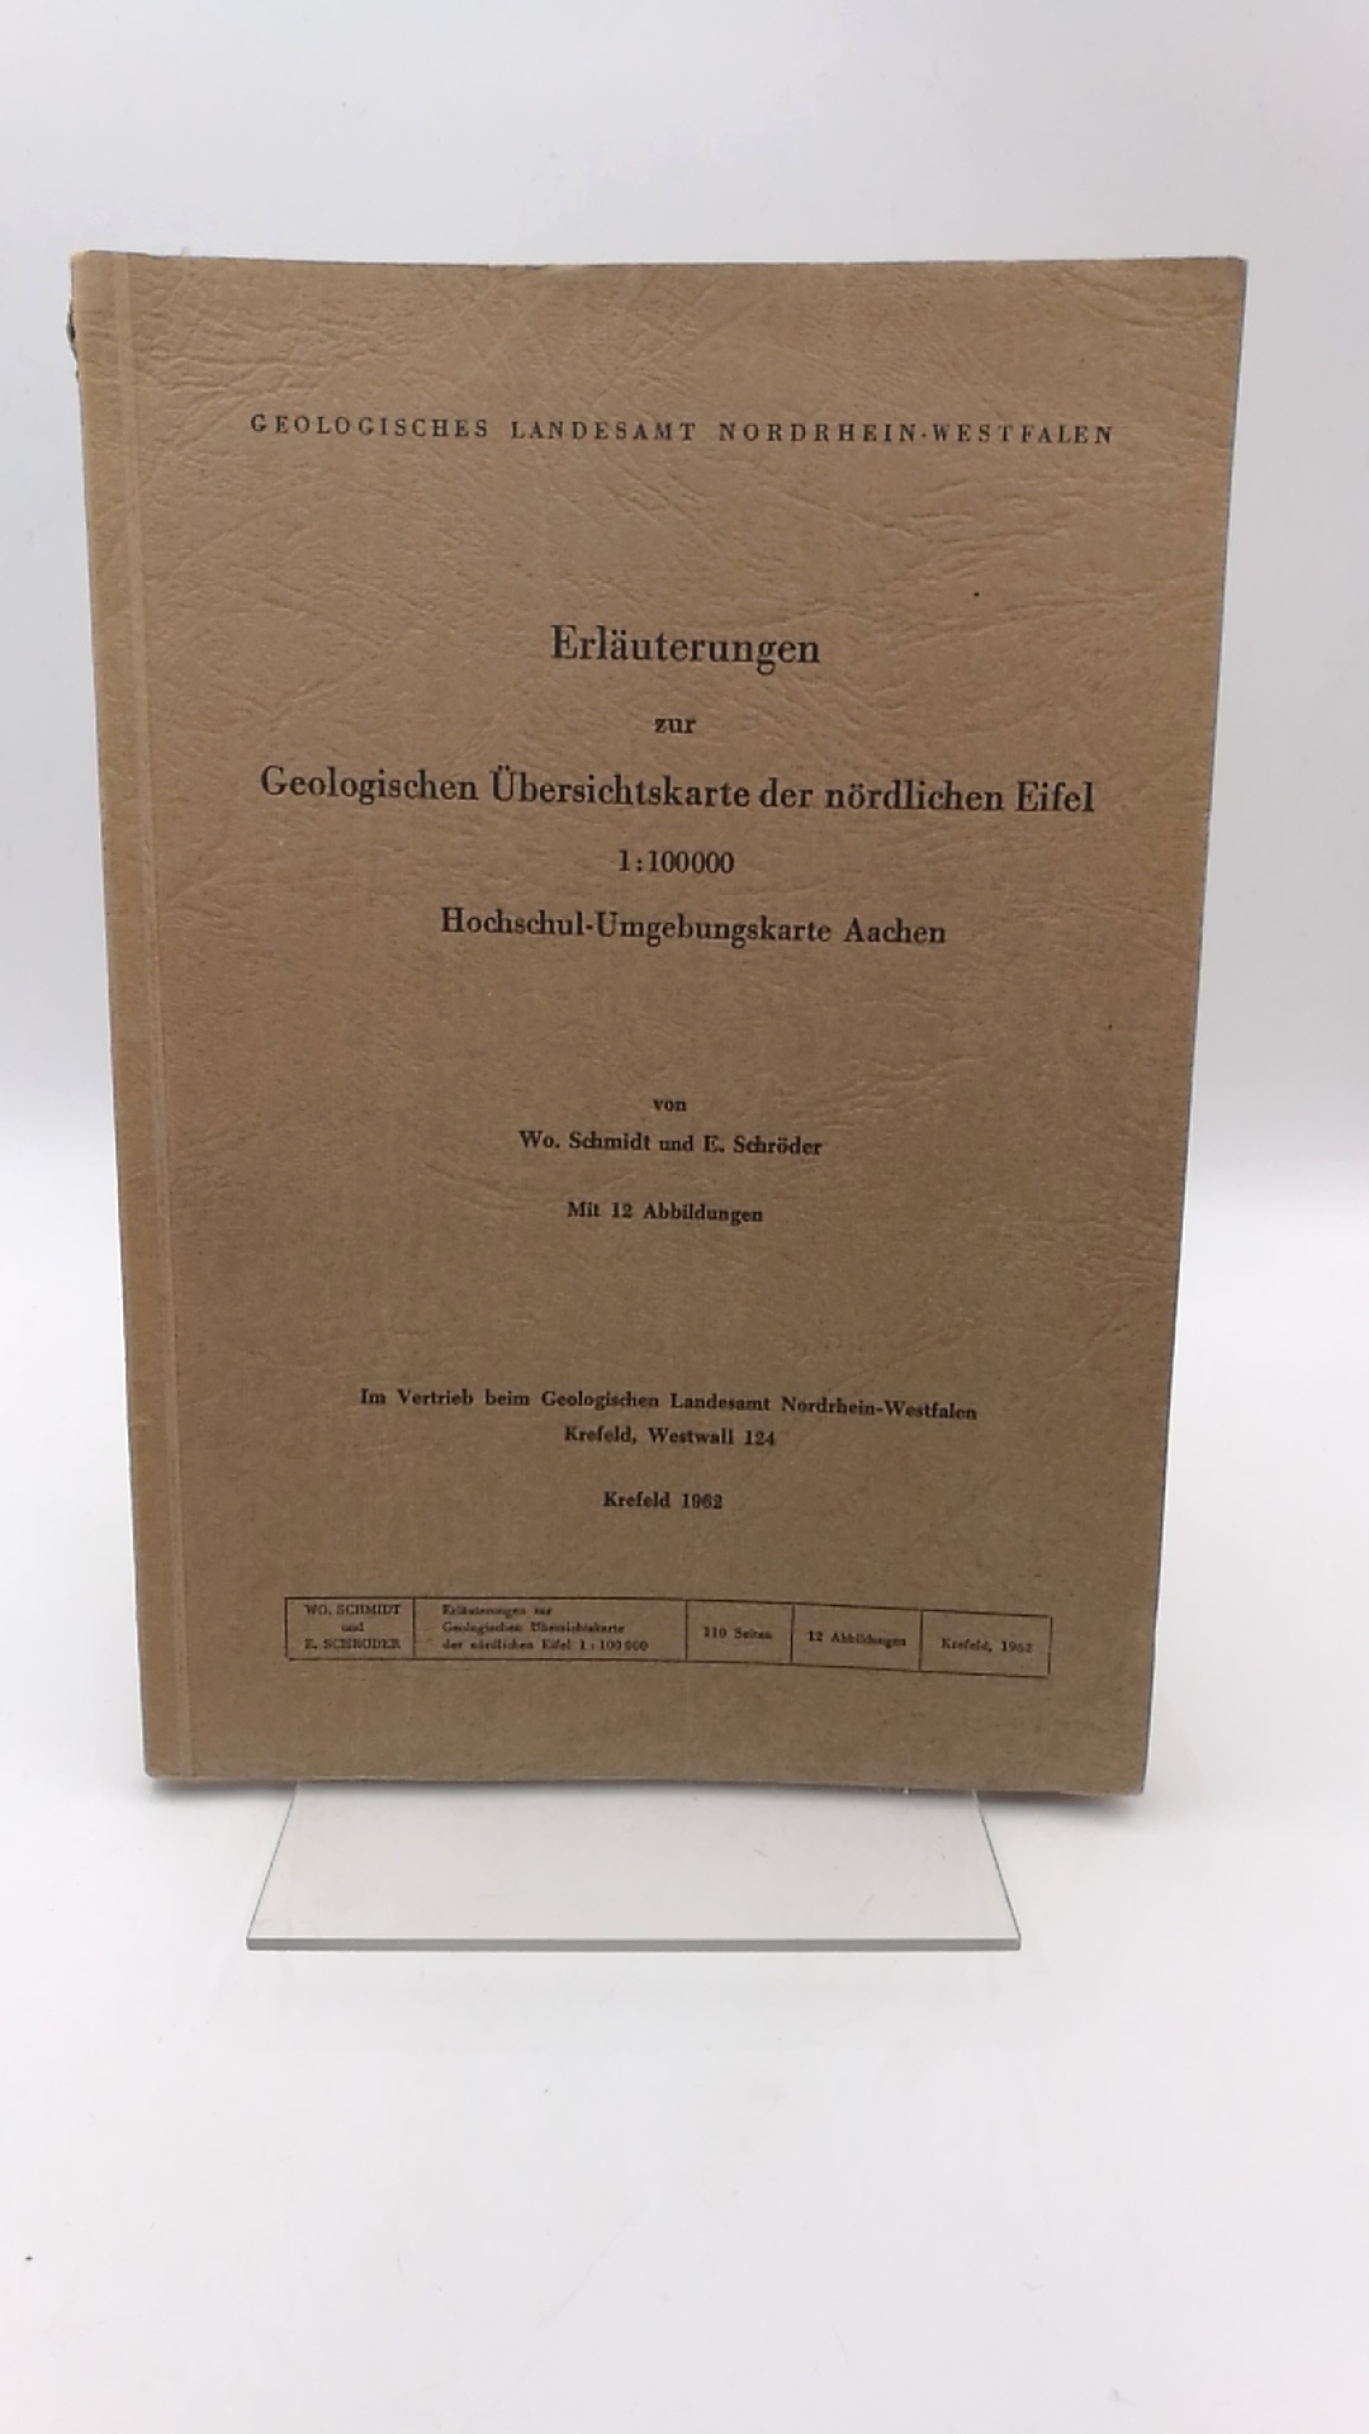 Schmidt, Wo.: Erläuterungen zur Geologischen Übersichtskarte der nördlichen Eifel 1:100 000 Hochschul-Umgebungskarte Aachen